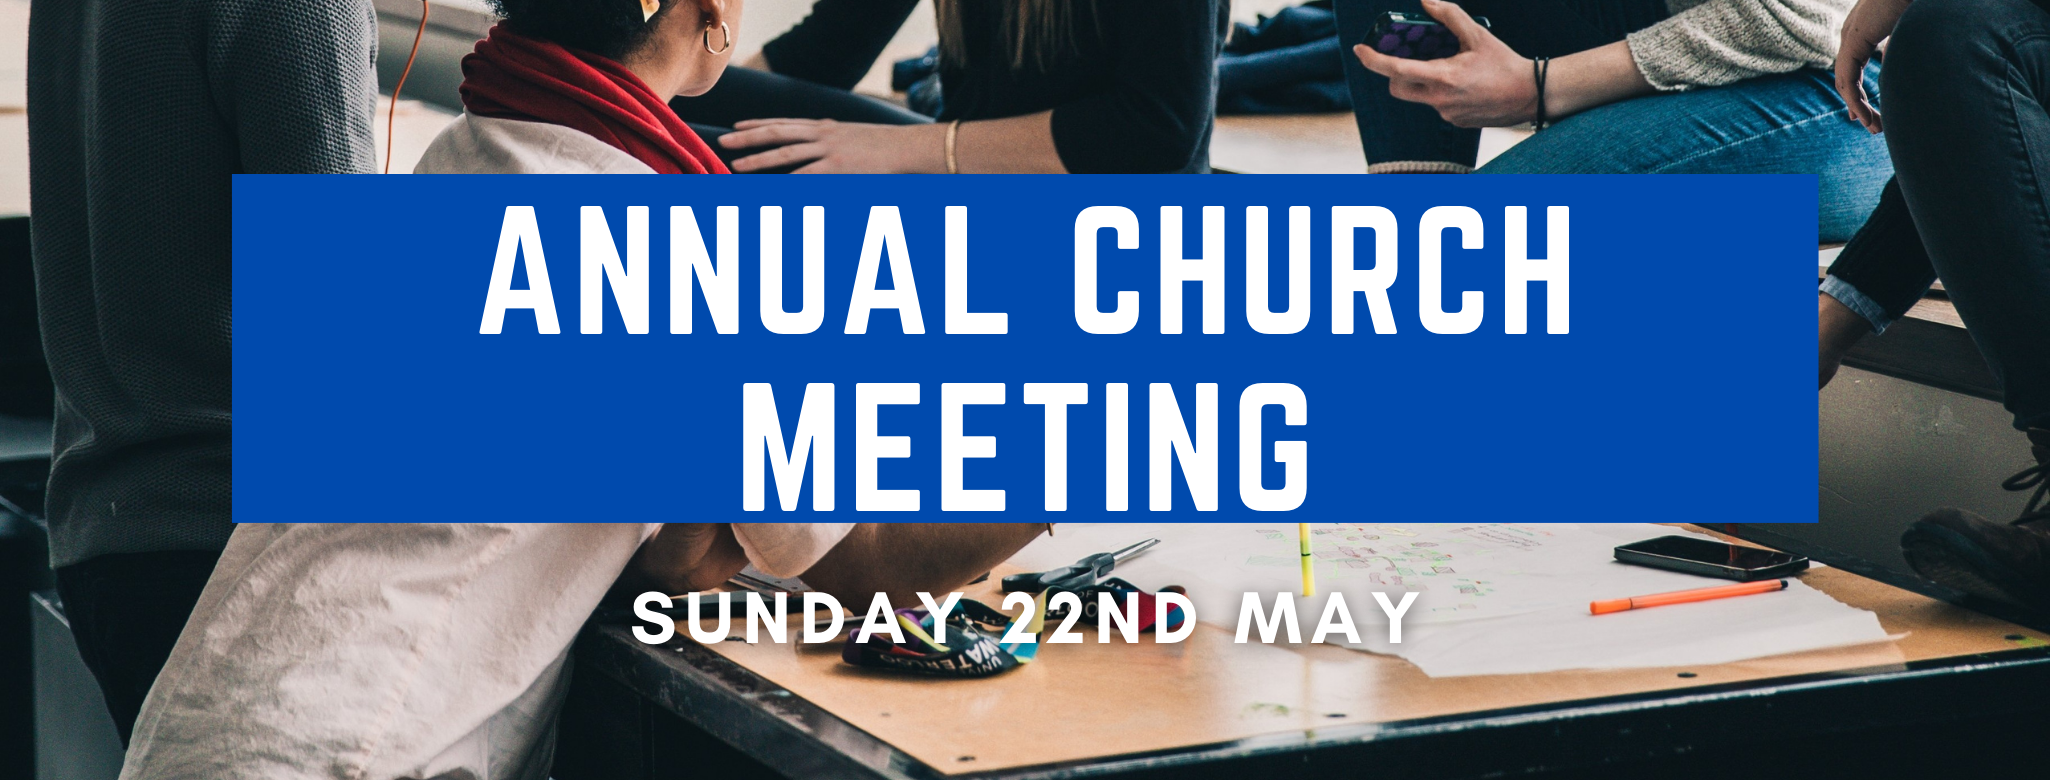 Annual church meeting (1)